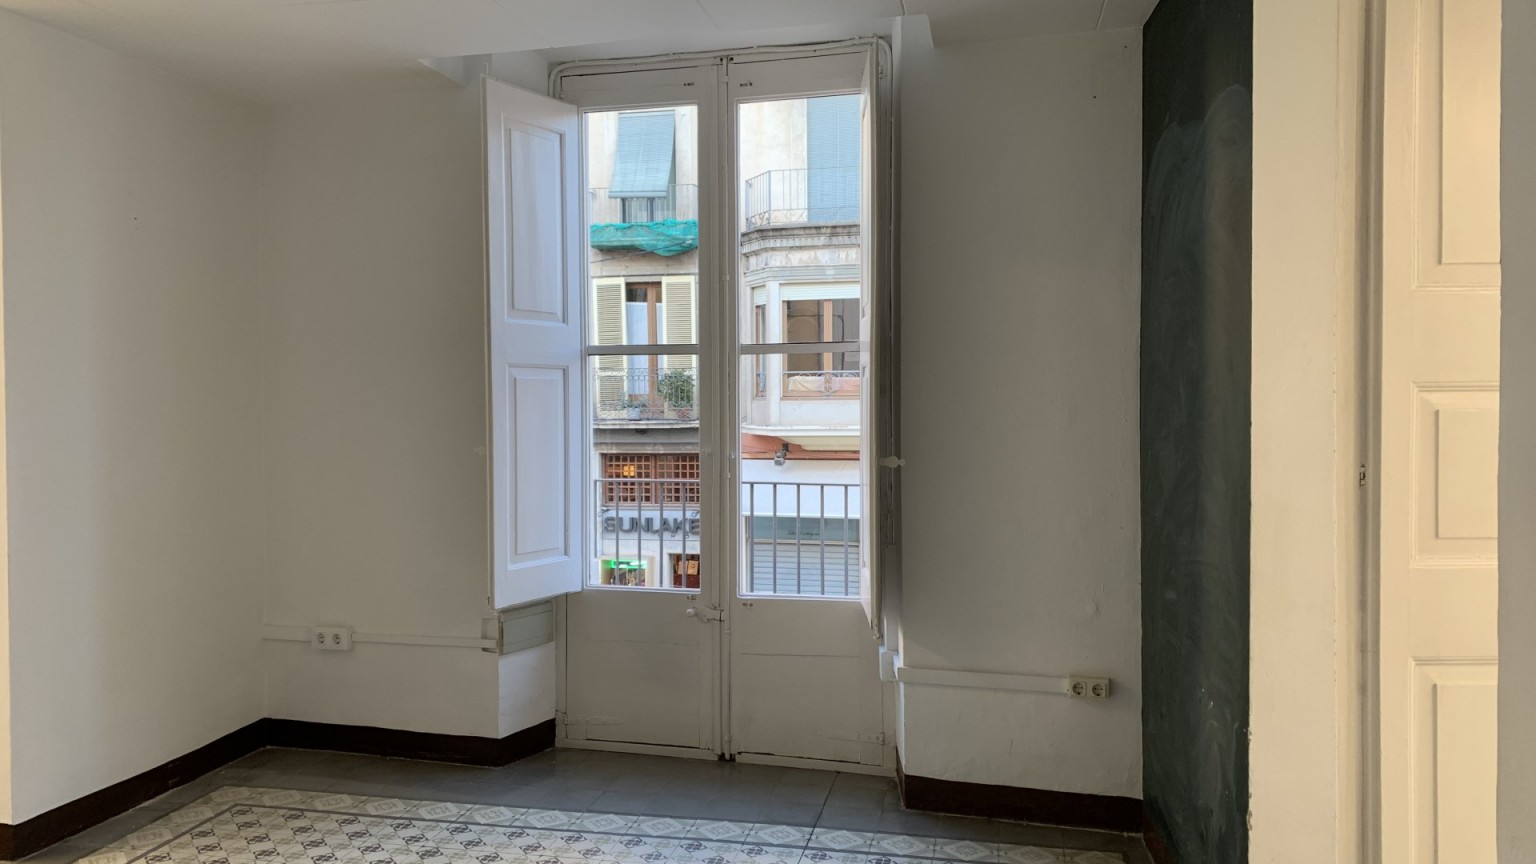 Ampli pis en venda, de 4 habitacions, amb excel·lent situació, a la Rambla de Figueres.